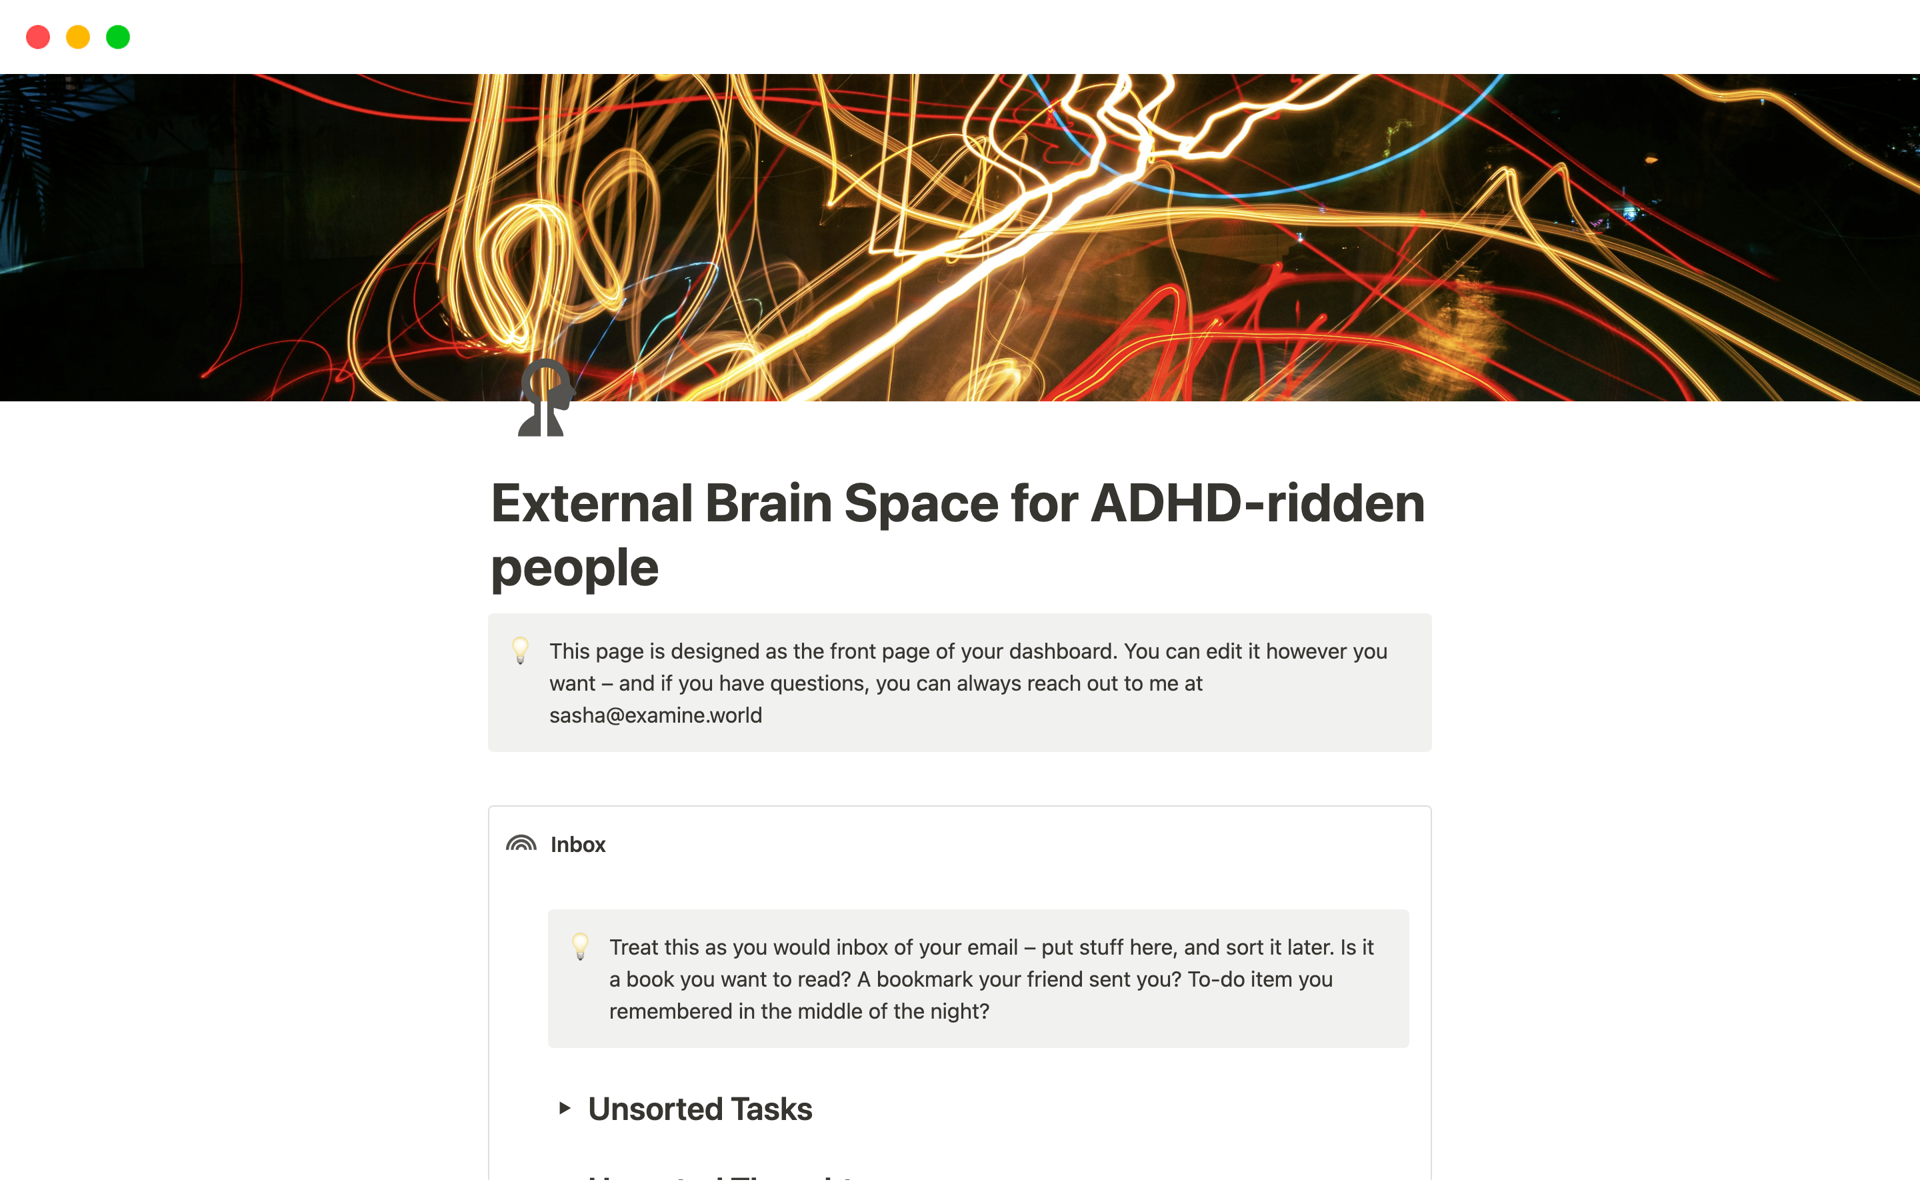 Uma prévia do modelo para External Brain Space for ADHD-ridden people